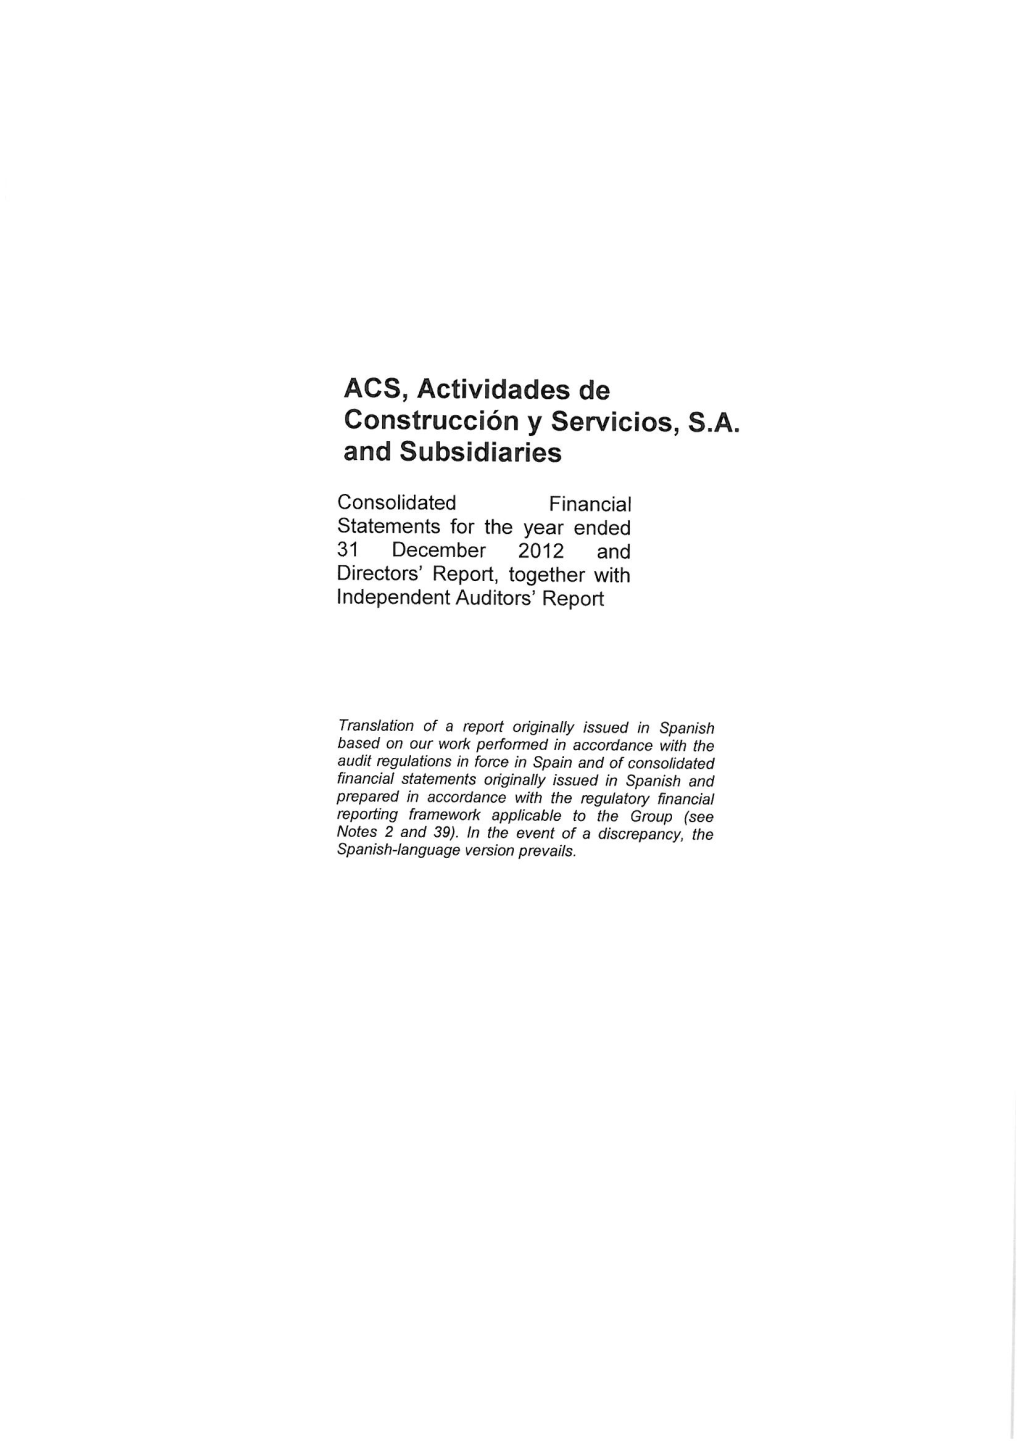 ACS, Actividades De Construcción Y Servicios, SA and Subsidiaries